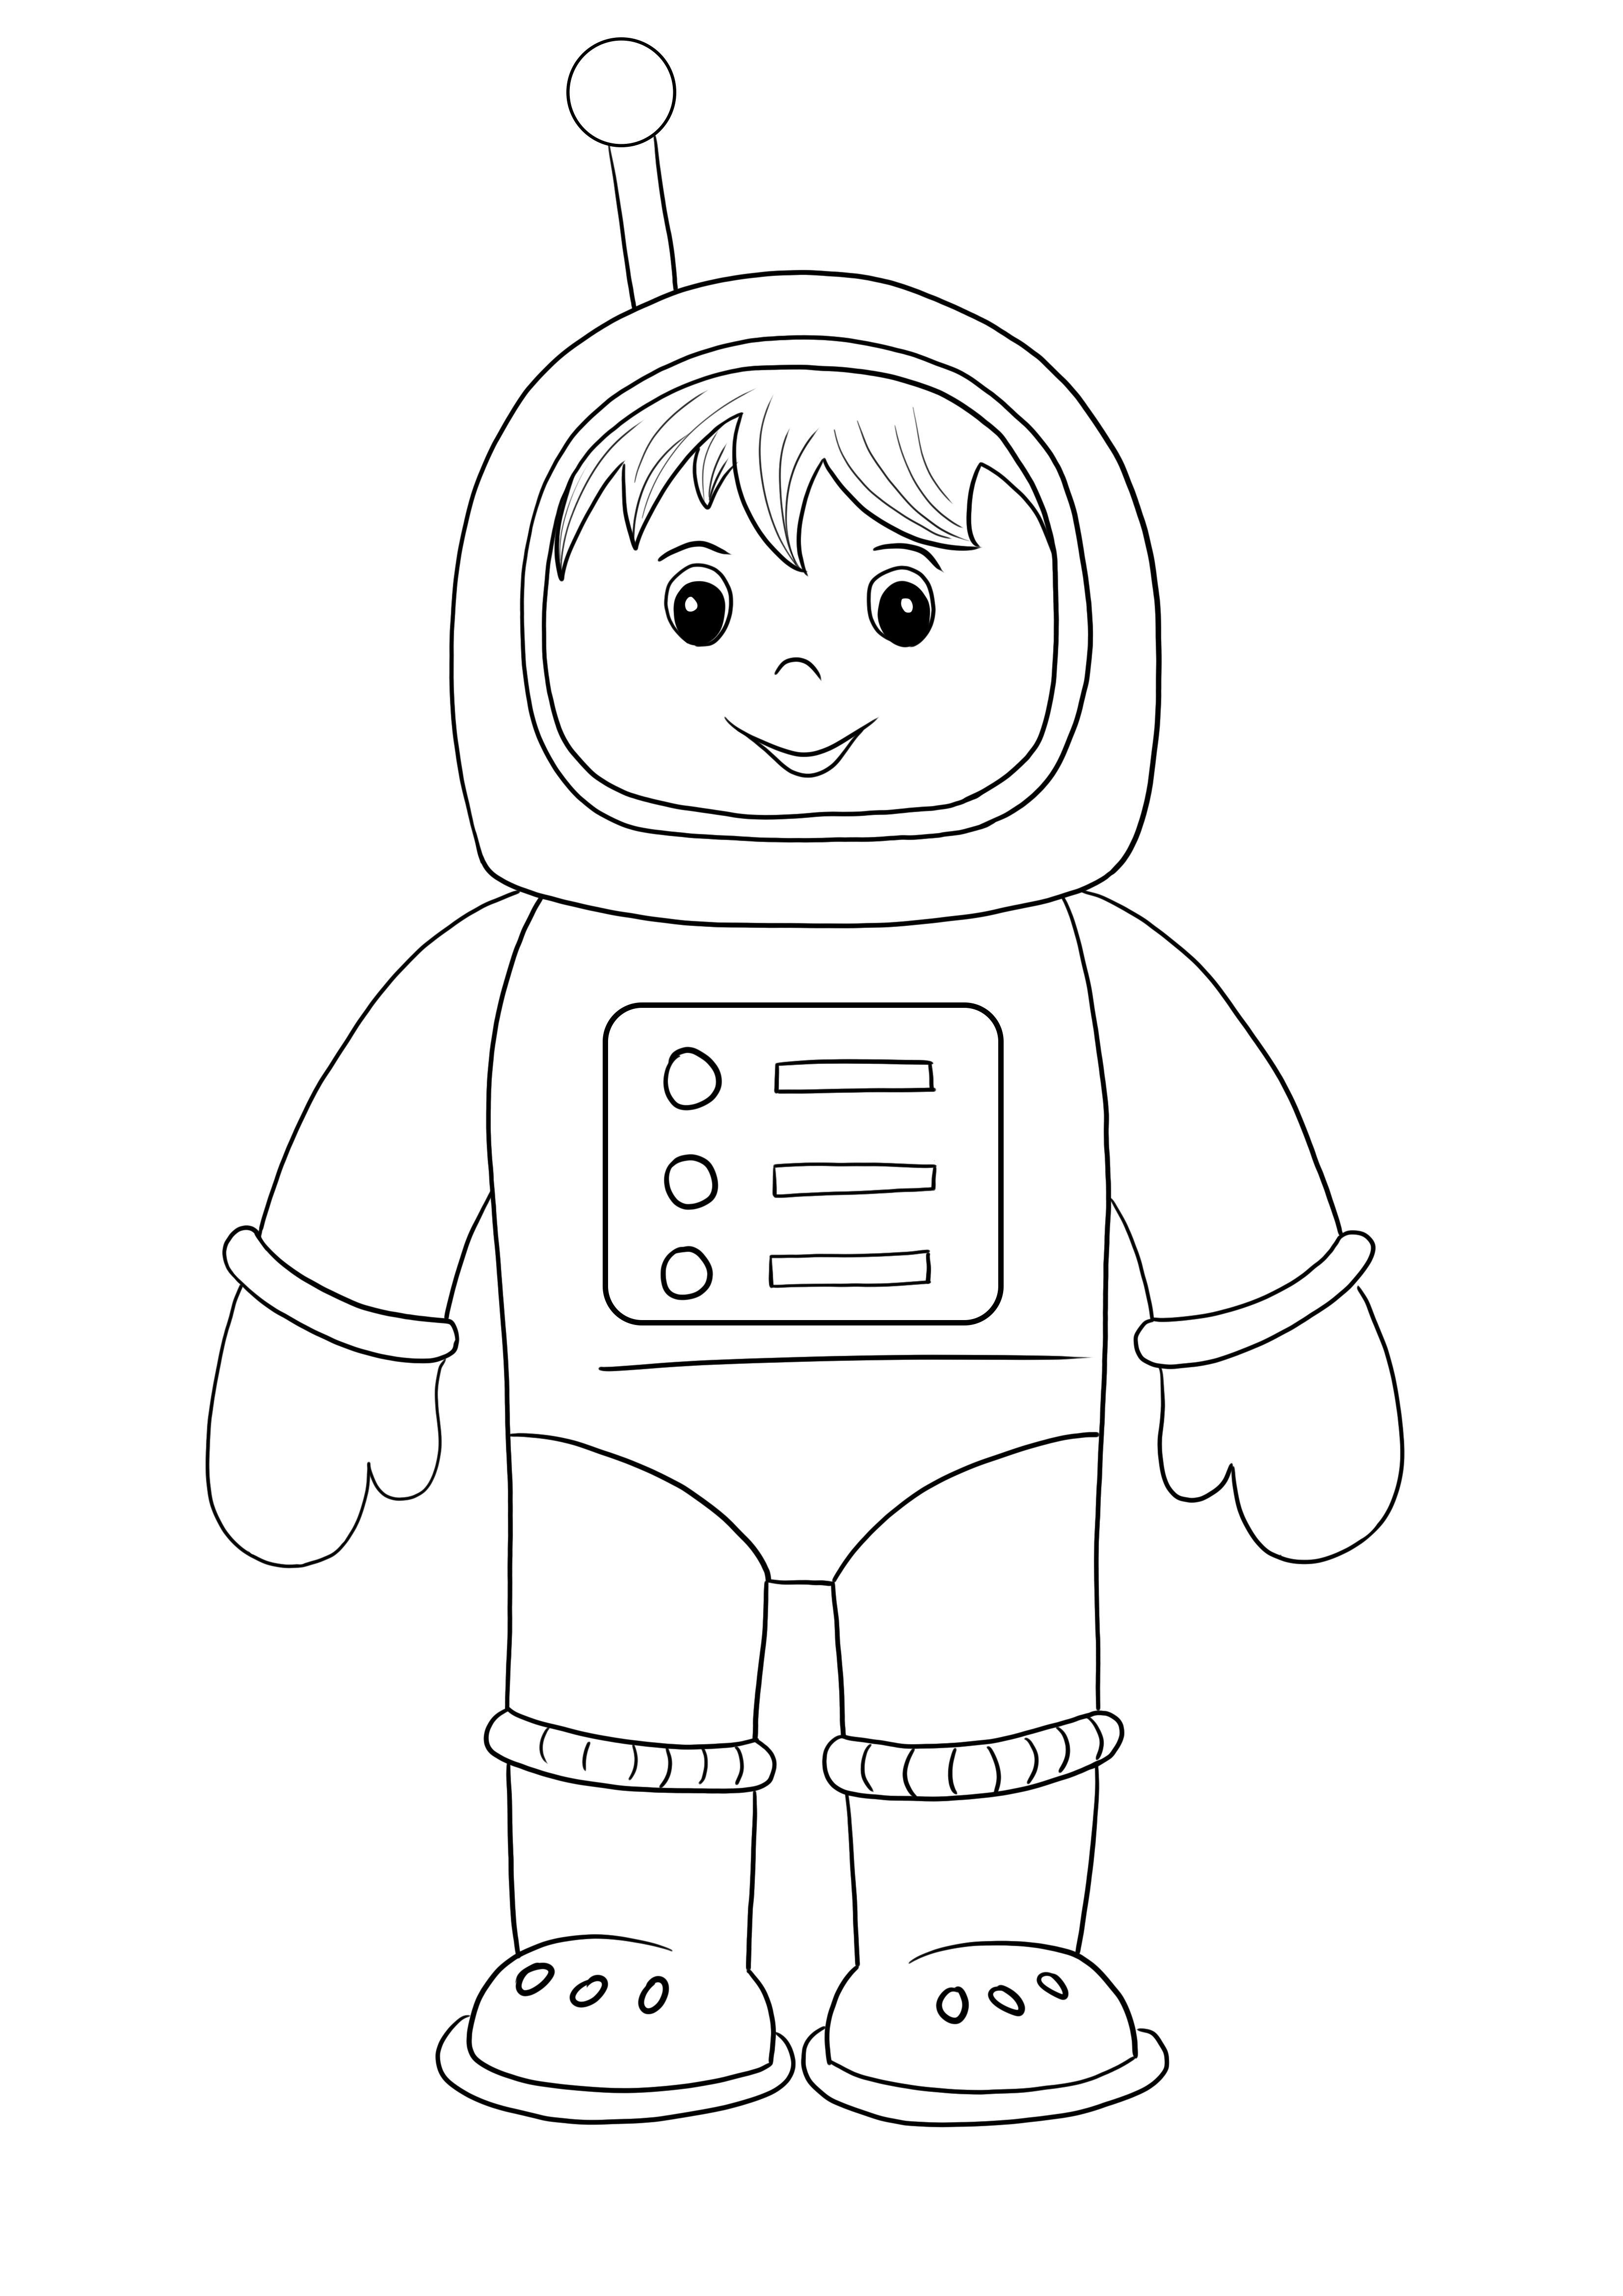 無料の印刷と着色のための宇宙服を着た宇宙飛行士